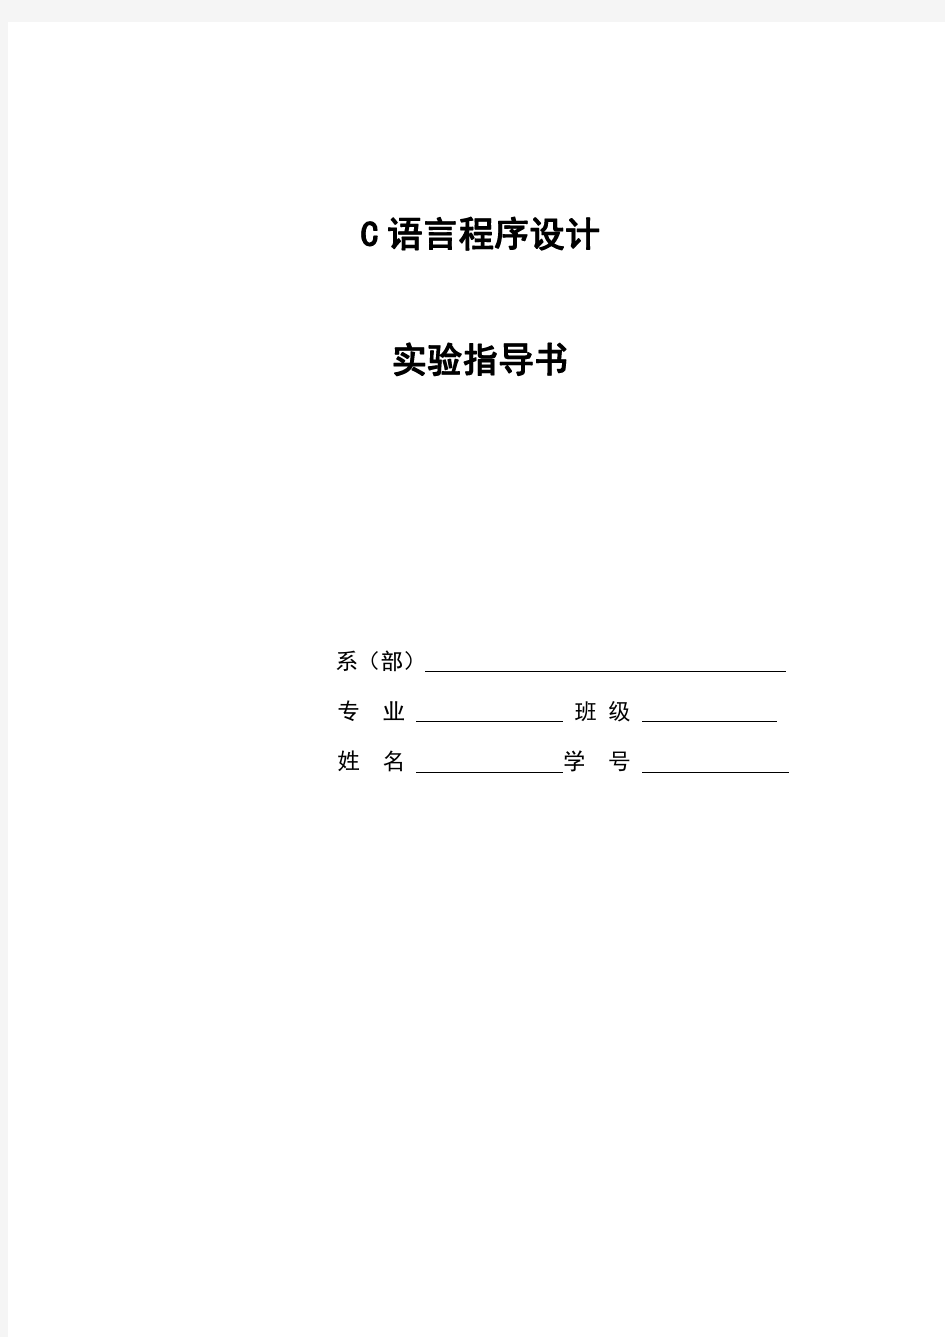 C语言实验指导书 (2012)